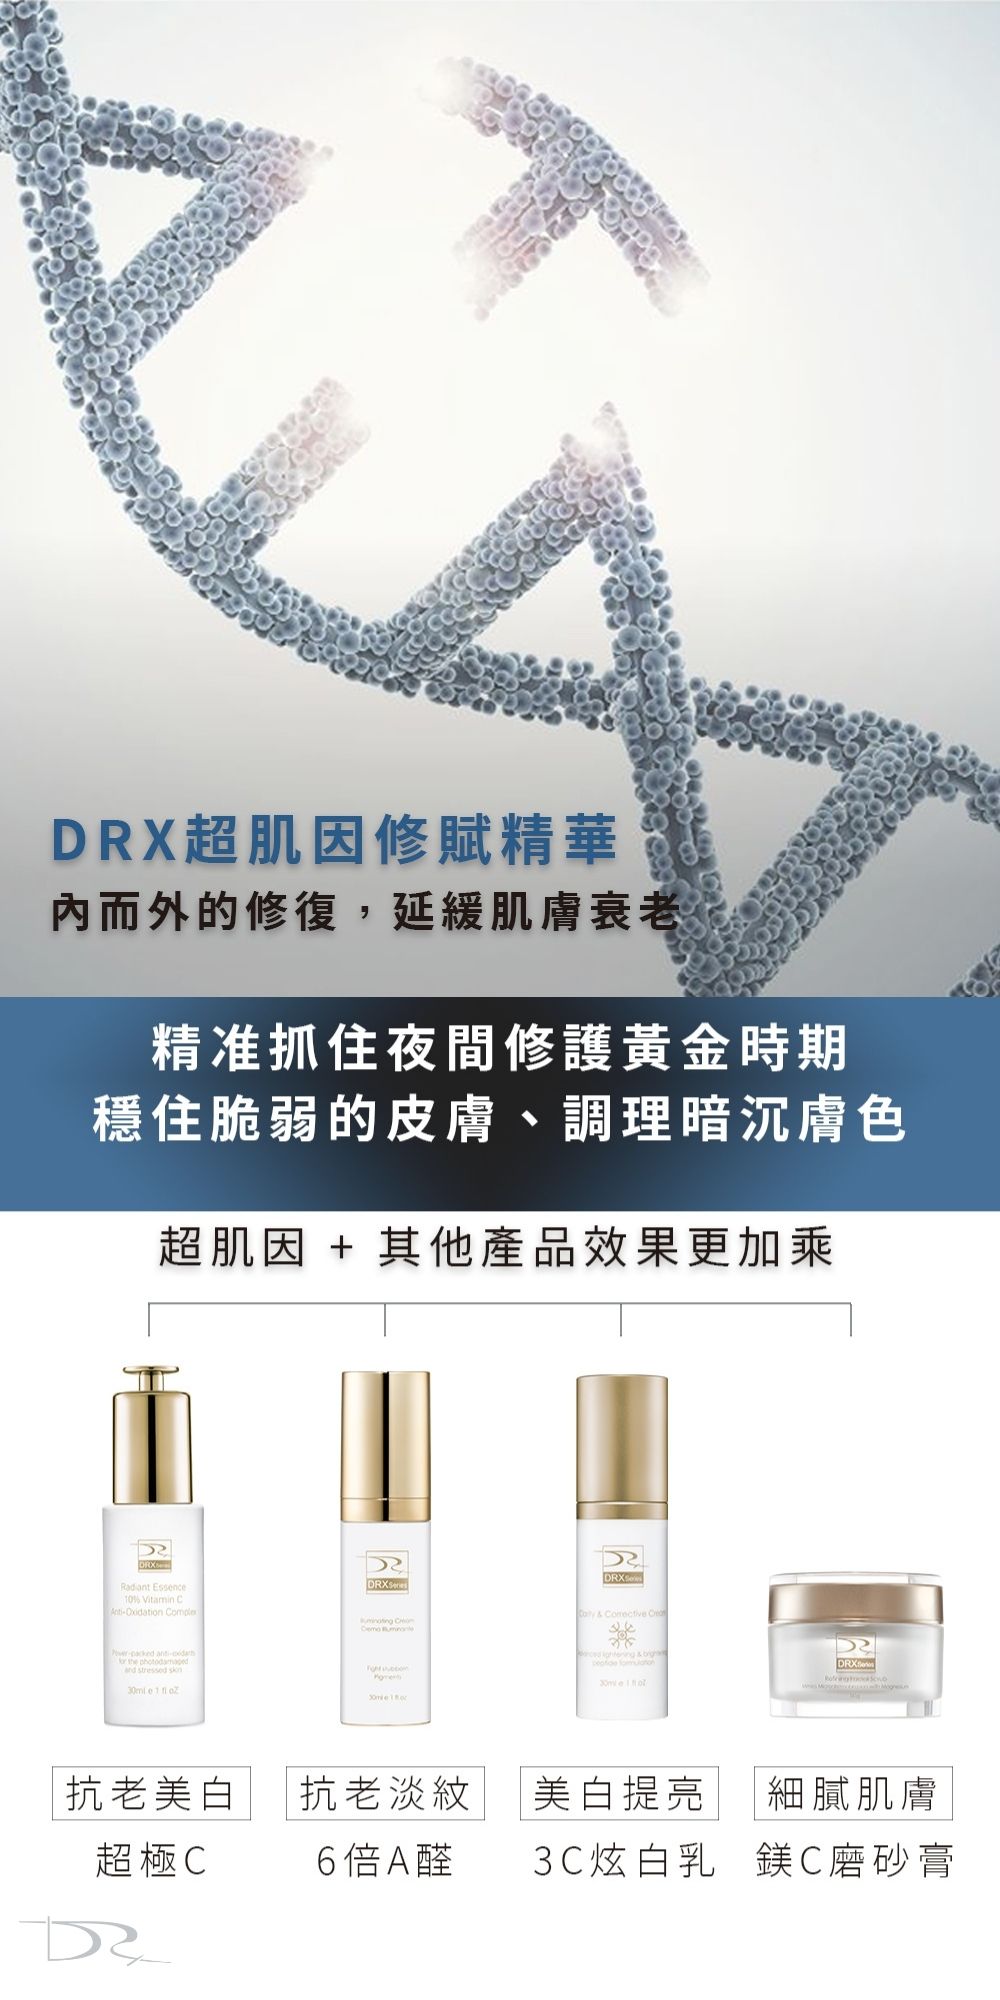 DRX達特仕的肌膚暗沉保養品系列-超能炫白組，從每天的洗臉升級、磨砂去角質、美白提亮到抗老修護，讓你不用多花一毛錢就能獲得一款終生值得投資的抗老經典。如果你需要肌膚暗沉系列保養品，就到DRX達特仕！